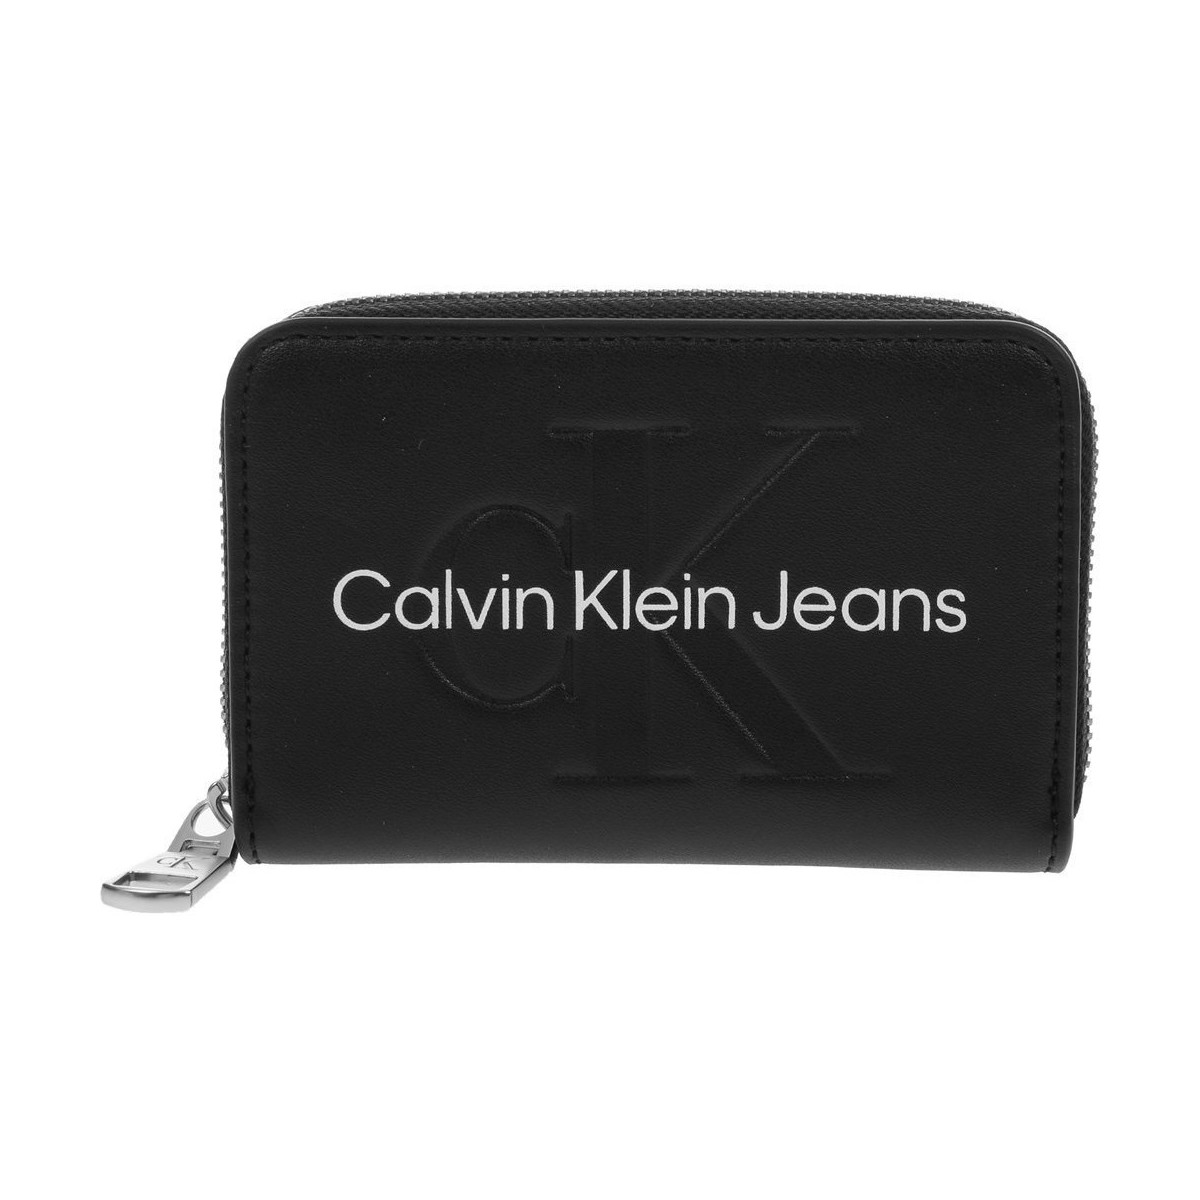 Malas Mulher Carteira Calvin Klein Jeans Accordion Zip Around Preto